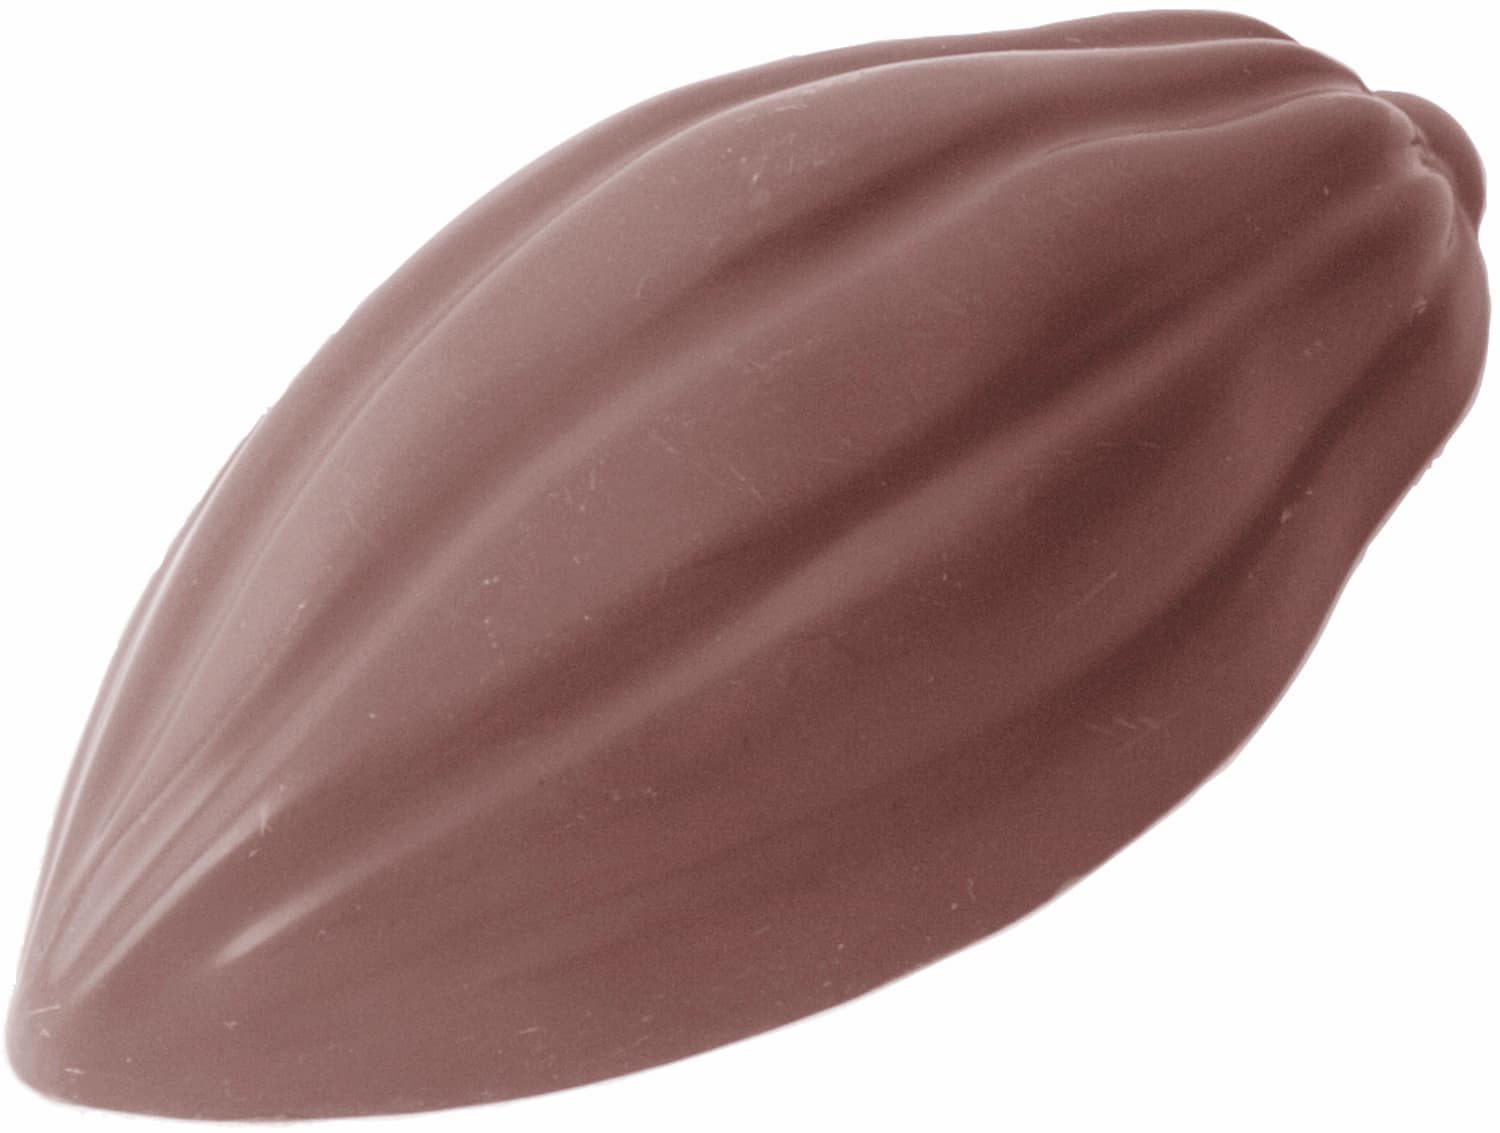 Schokoladenform "Kakaobohne" 421558